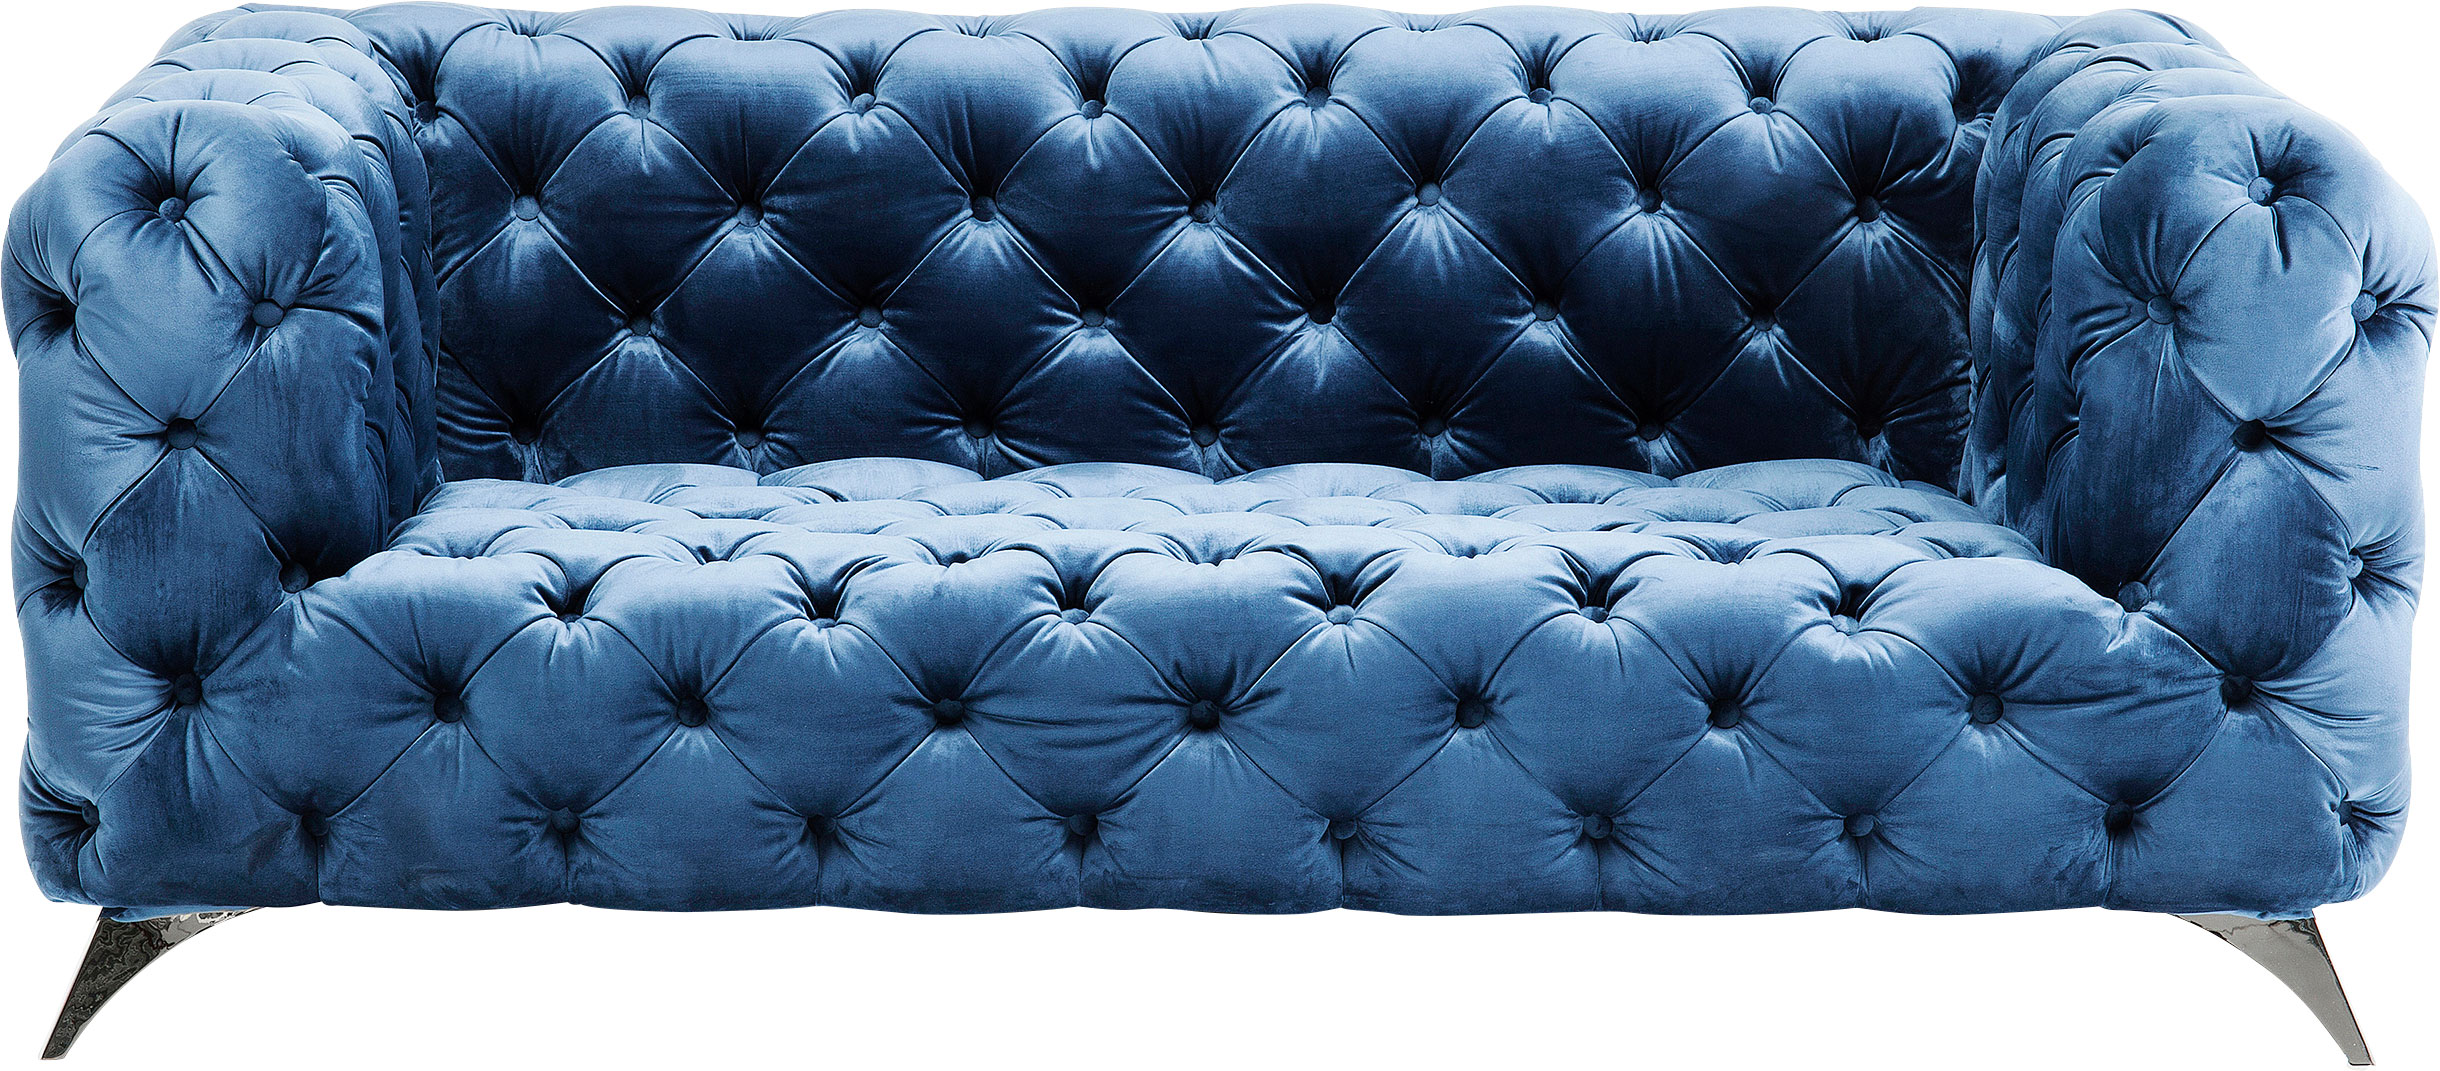 Sofa Look 180cm Velvet Blue